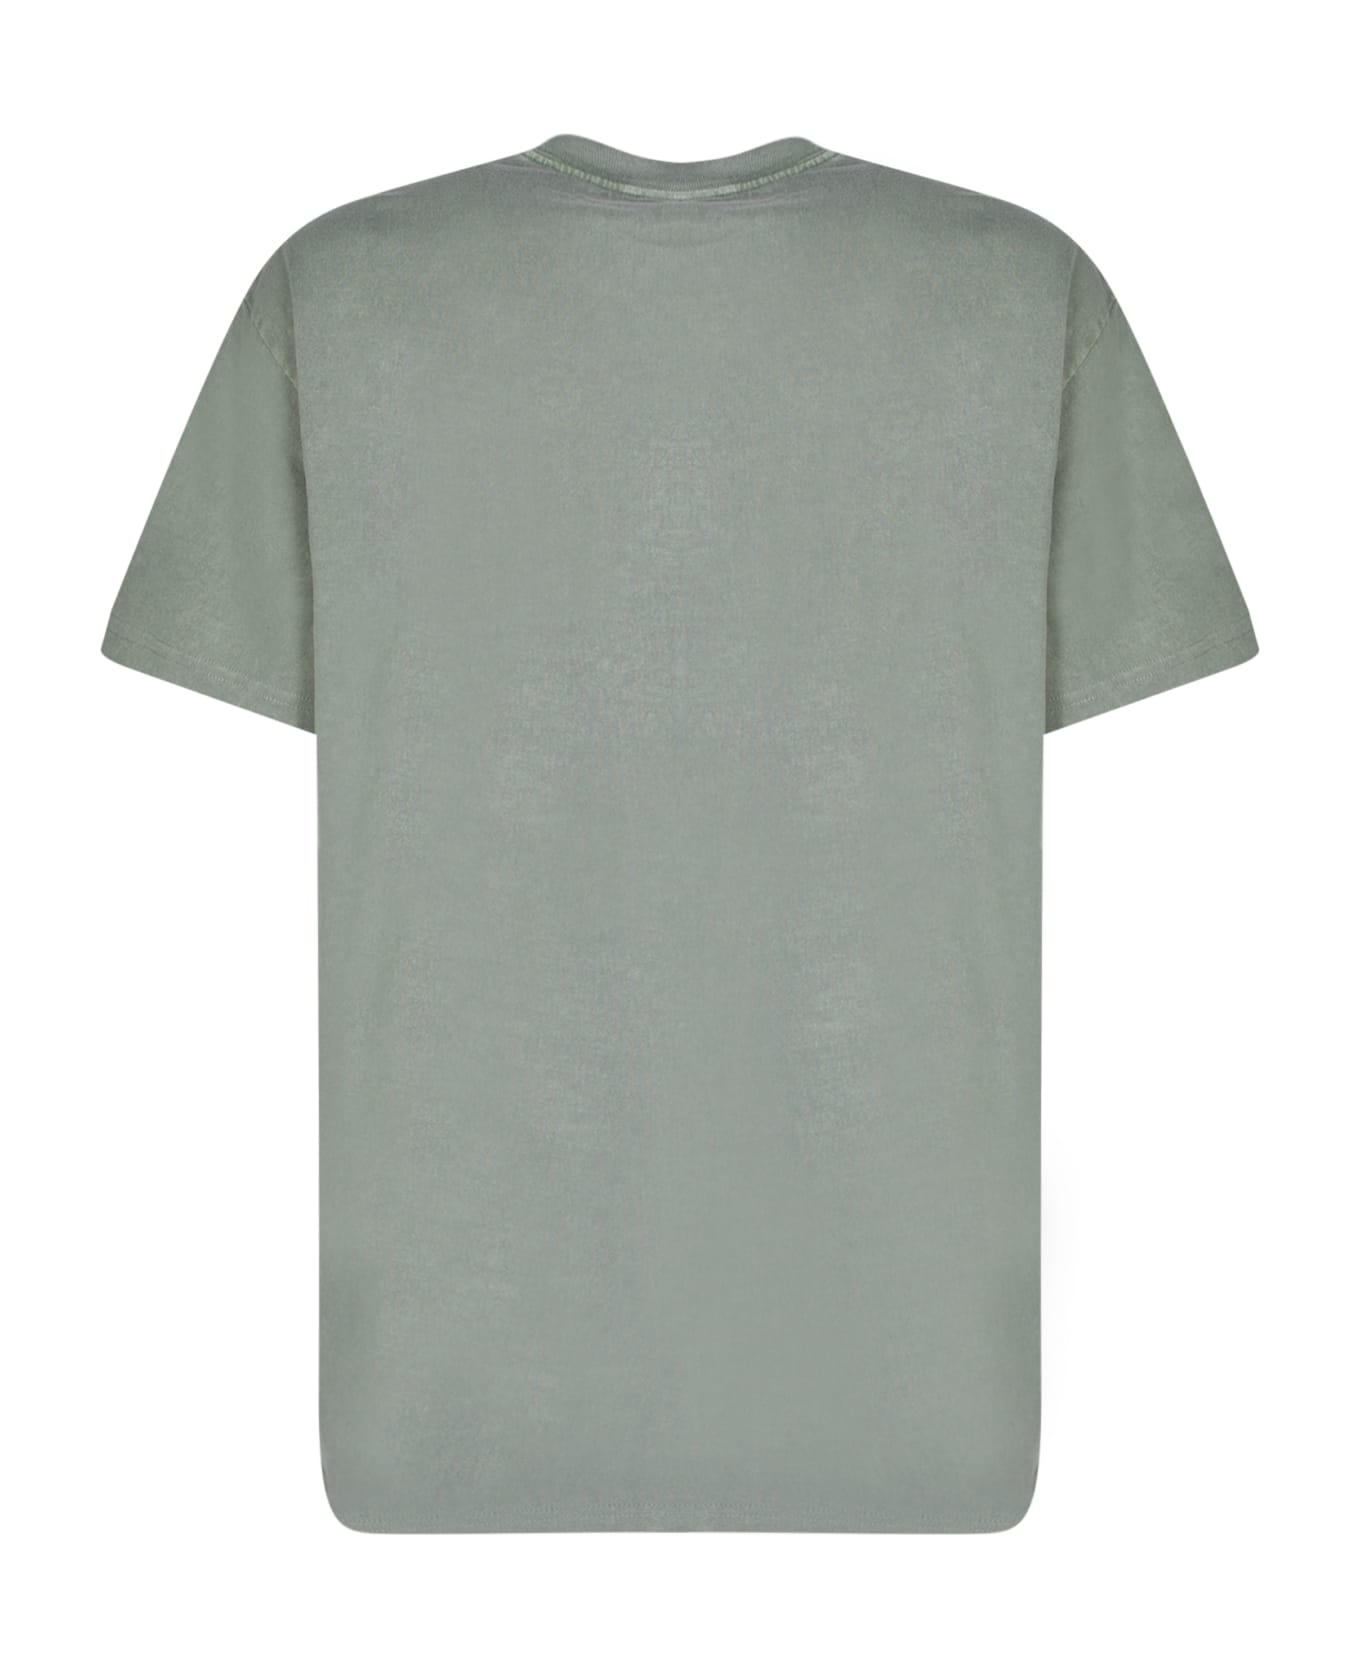 Carhartt Cotton T-shirt - Green